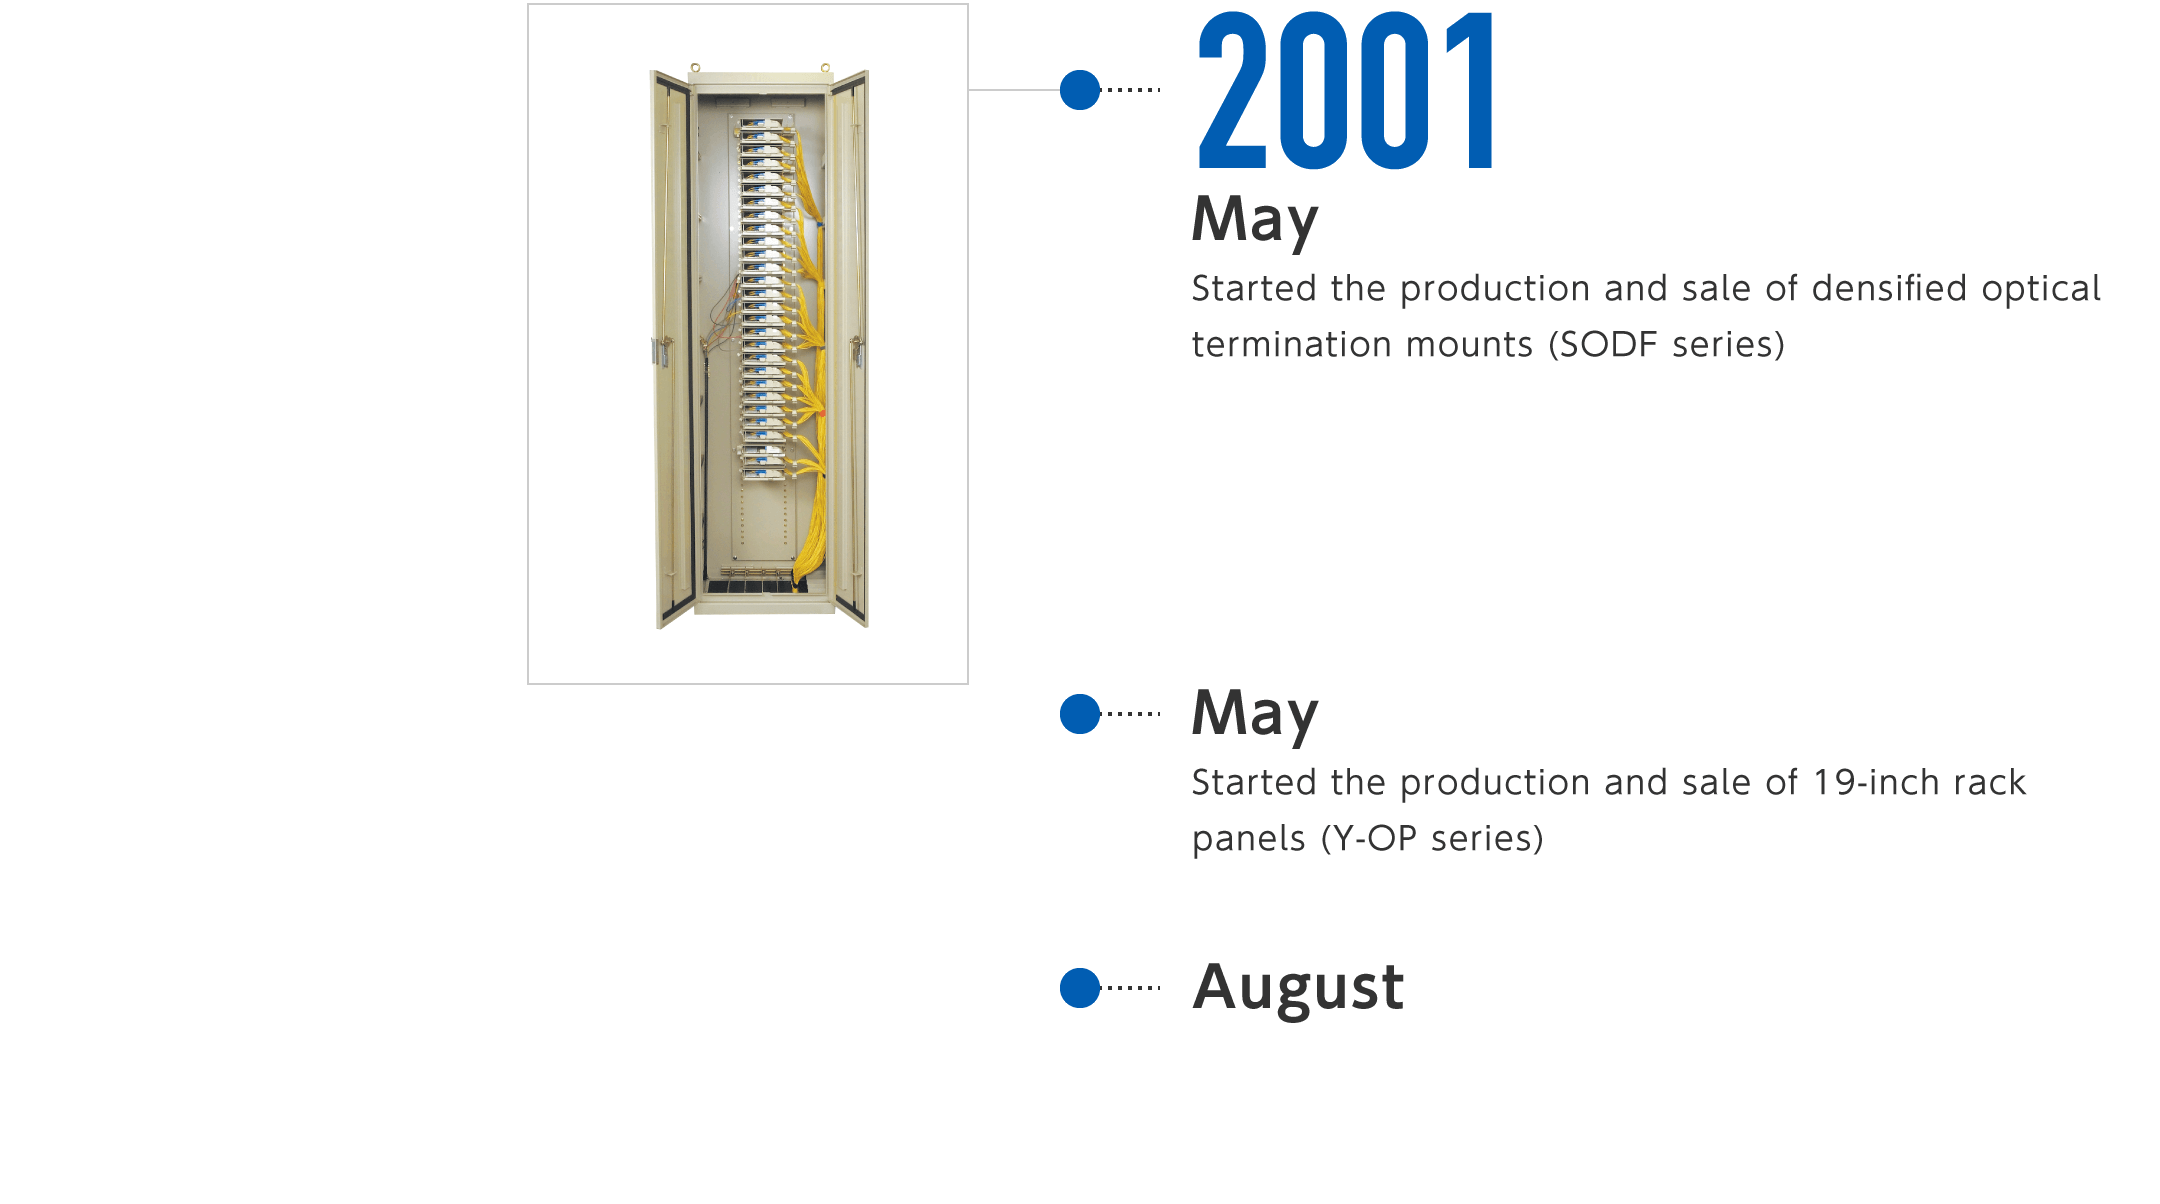 2001年5月-高密度型光成端架(SODFシリーズ)の製造・販売を開始、5月-19インチラック用パネル(Y-OPシリーズ)の製造・販売を開始、8月-光ケーブル用ドロップクロージャ(FDクロージャ)の製造・販売を開始